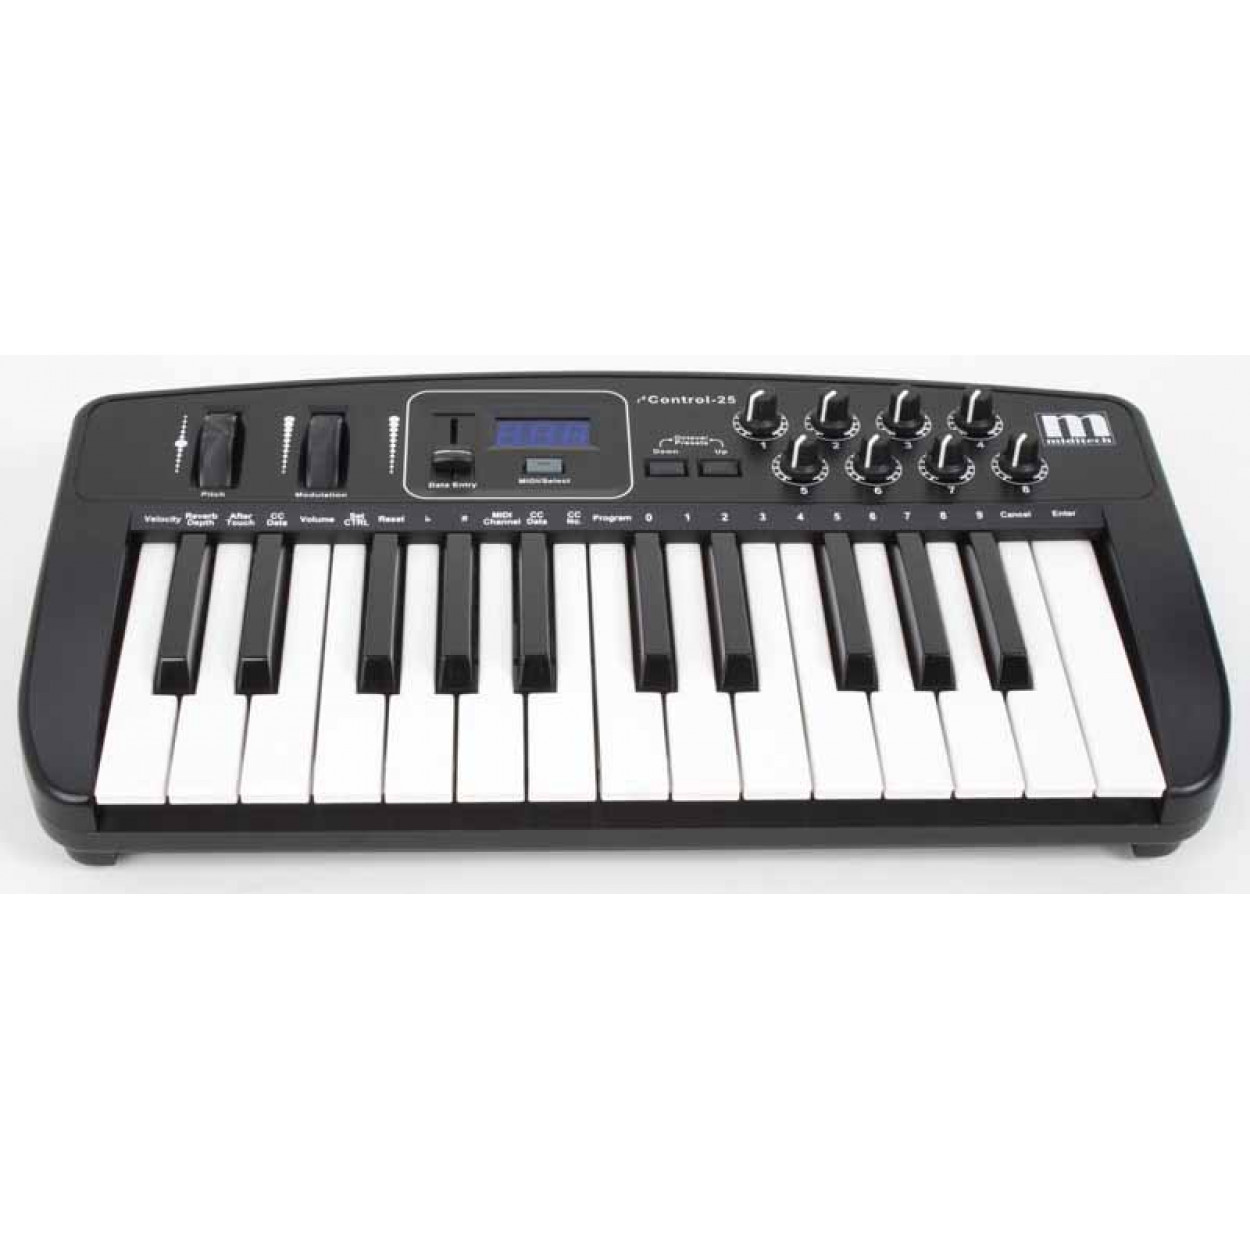 MIDI-клавіатура Miditech i2 Control 25 (25 клавіш)